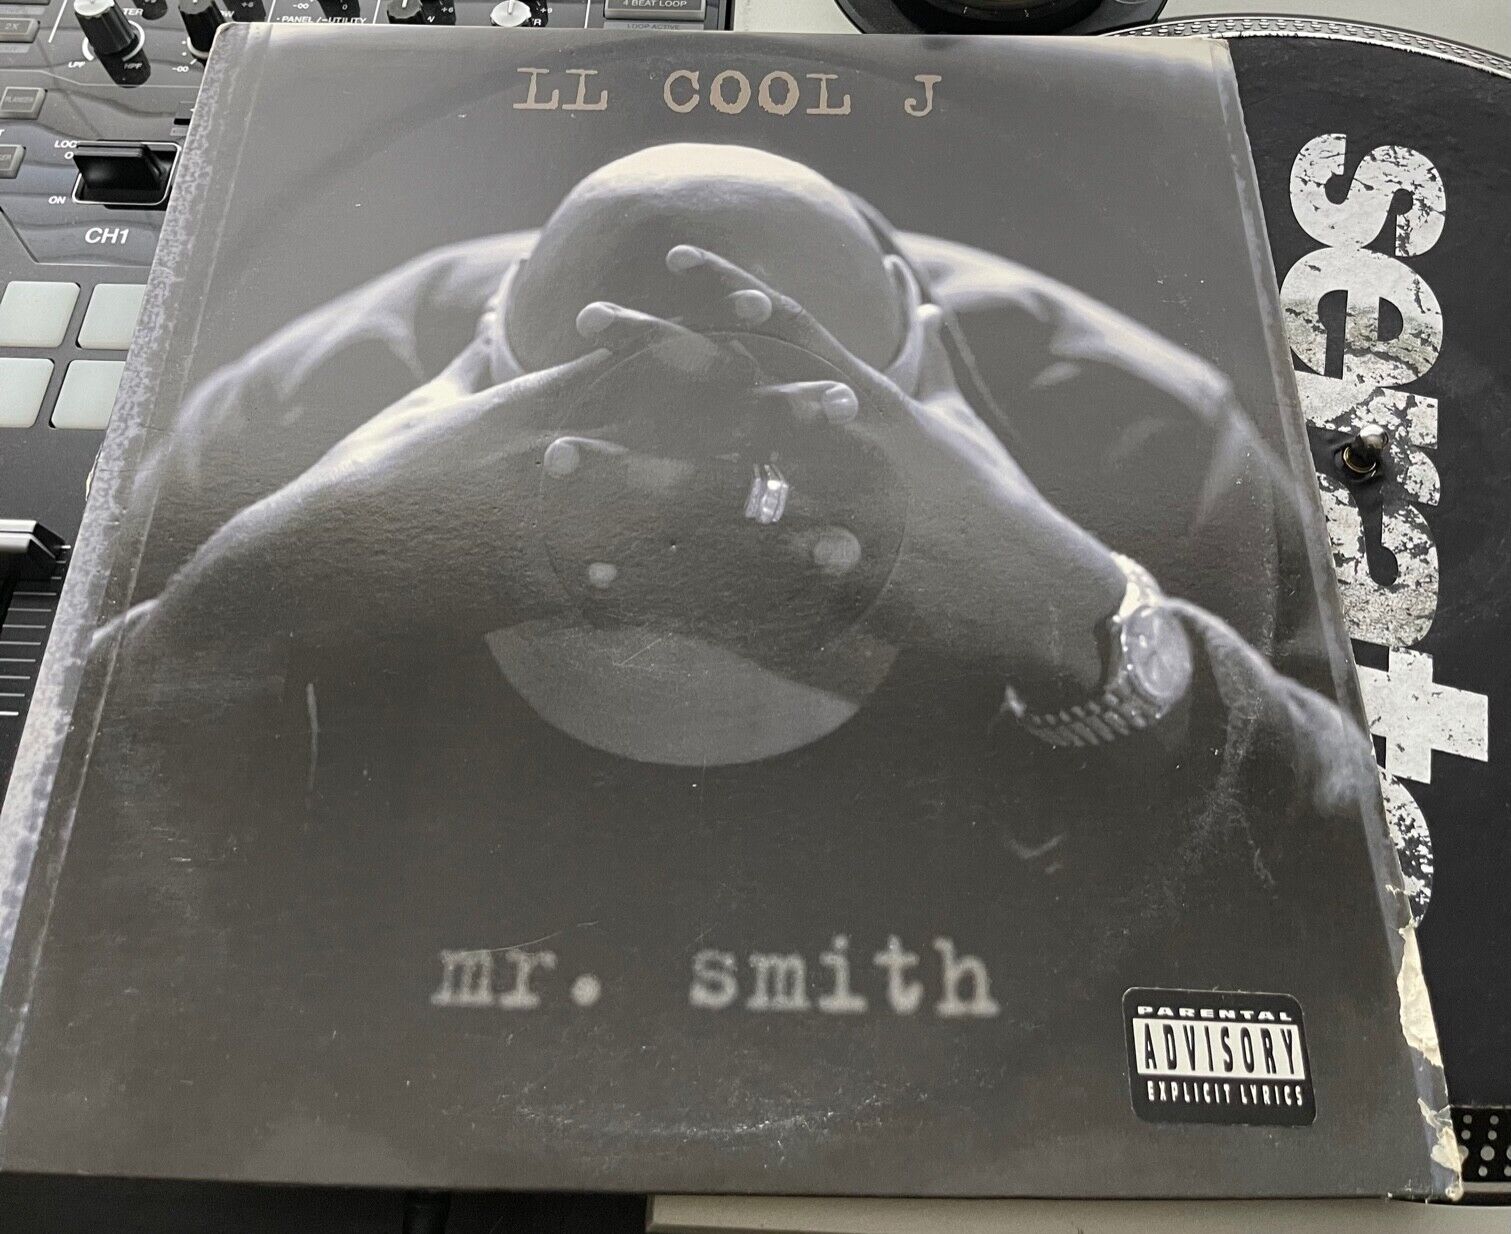 LL Cool J - Mr. Smith Original 1995 Press PROMO LP  in Picture Cover VG+